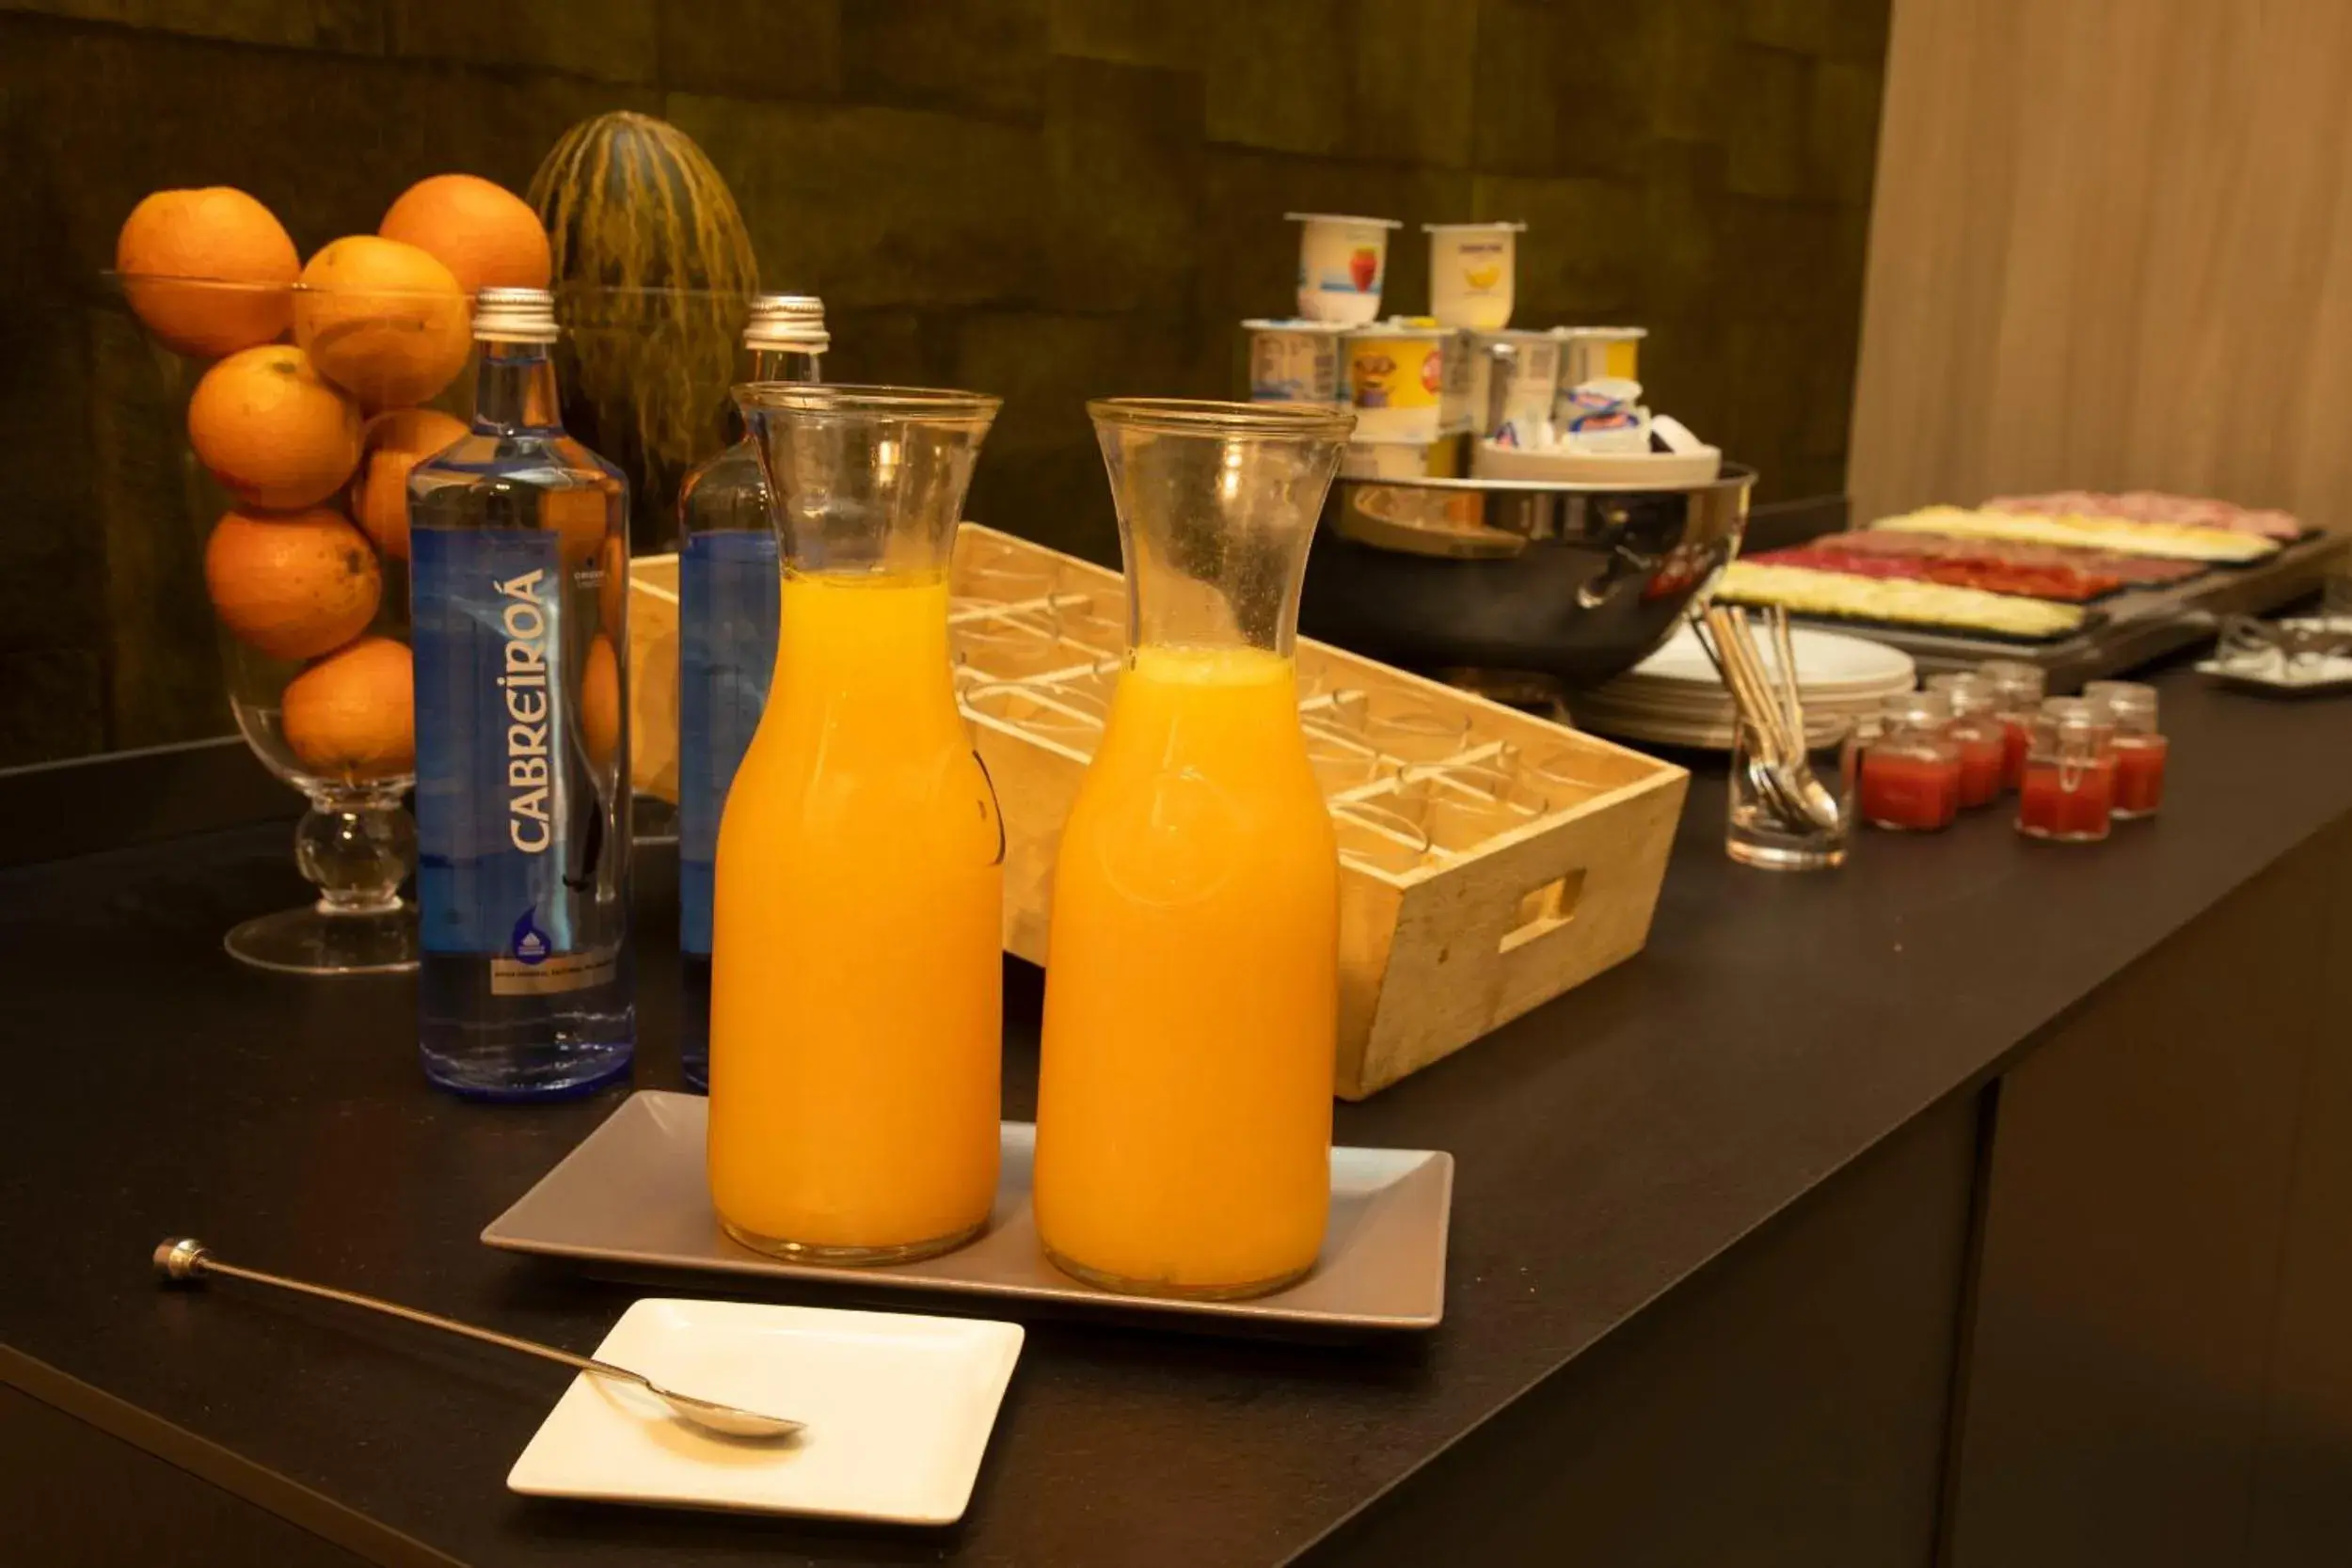 Buffet breakfast in Hotel Lux Santiago